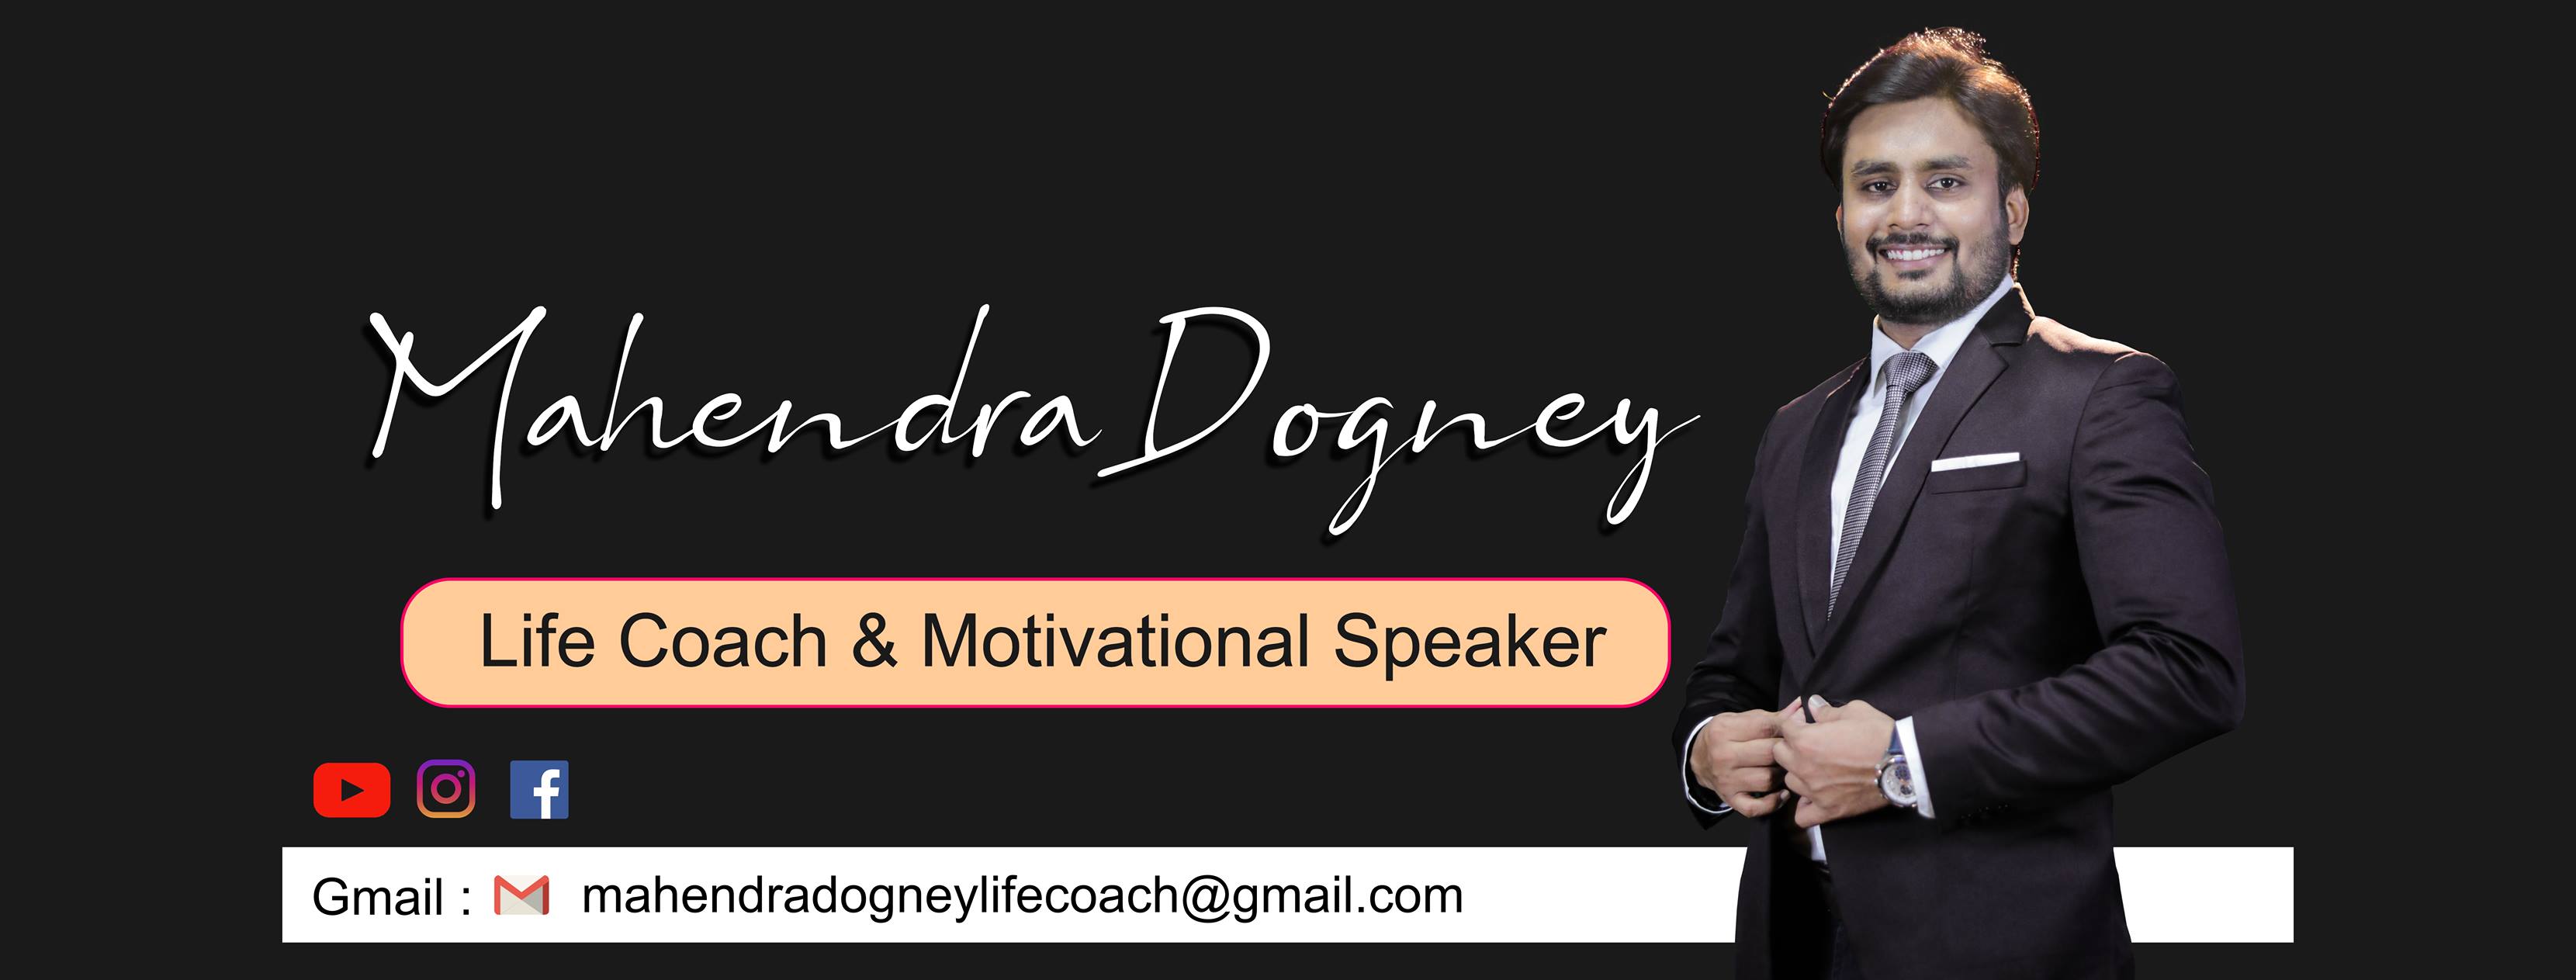 Mahendra Dogney   Life Coach